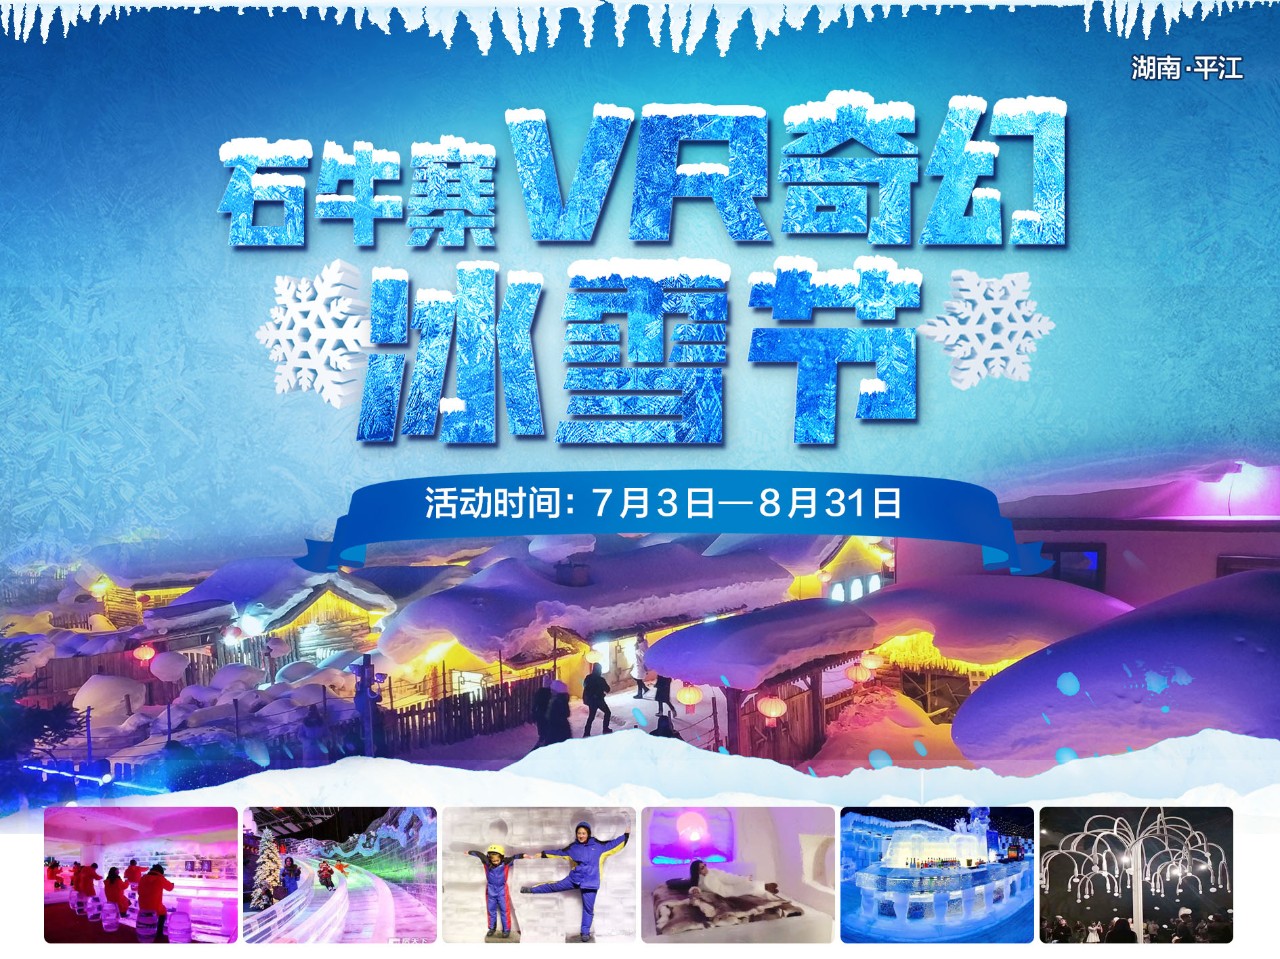 这个夏天去哪玩，快来平江石牛寨VR奇幻冰雪节，尽情享受-15℃冰爽体验吧！